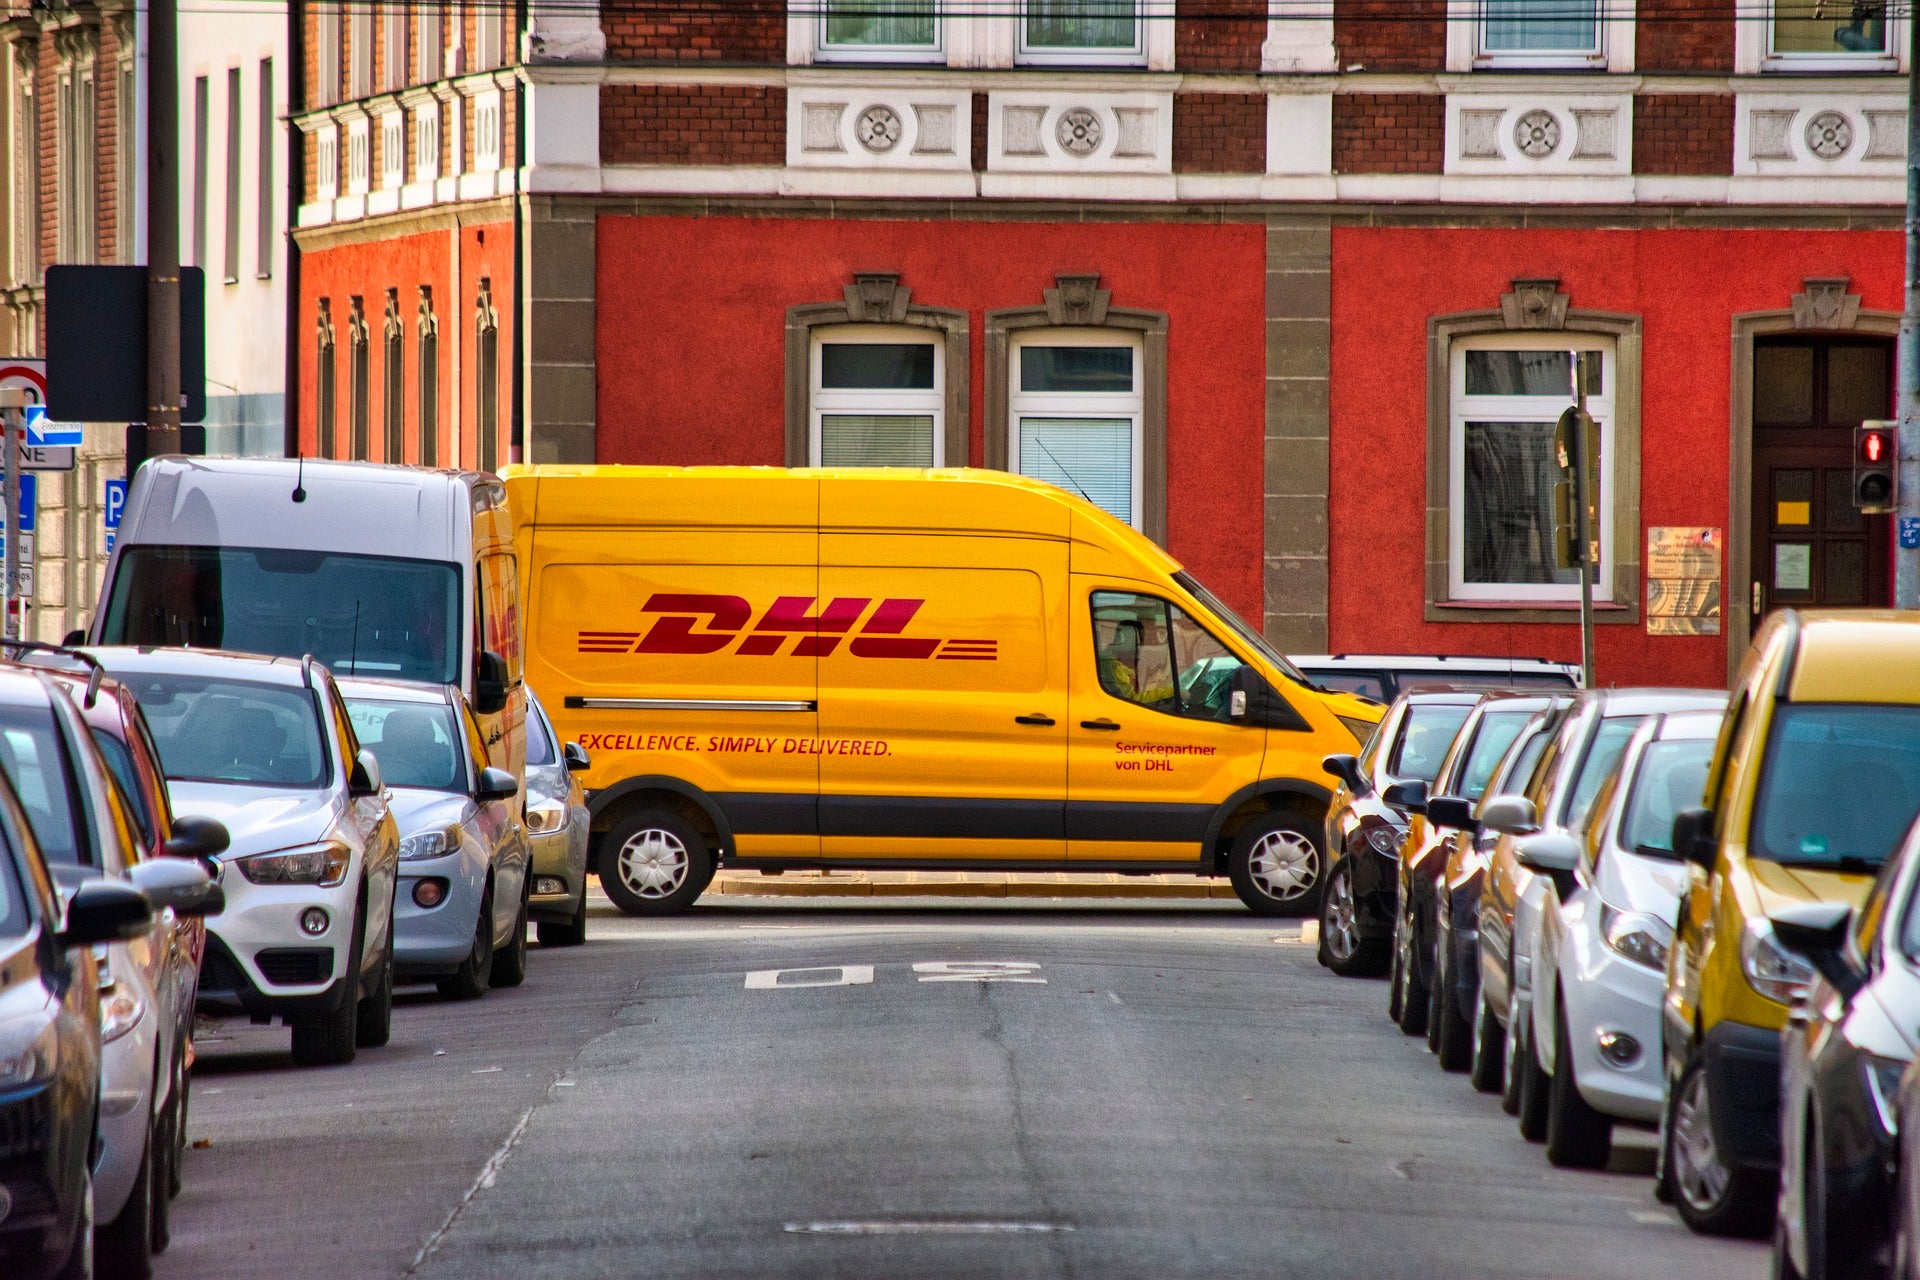 Blick in eine Straße auf der links und rechts Autos parken und am Ende ein DHL-Paketauto steht. Wir erklären dir Schritt für Schritt den Versandprozess und auf was du achten solltest, wenn du einen optimalen Onlineshop-Versand aufbauen willst! 